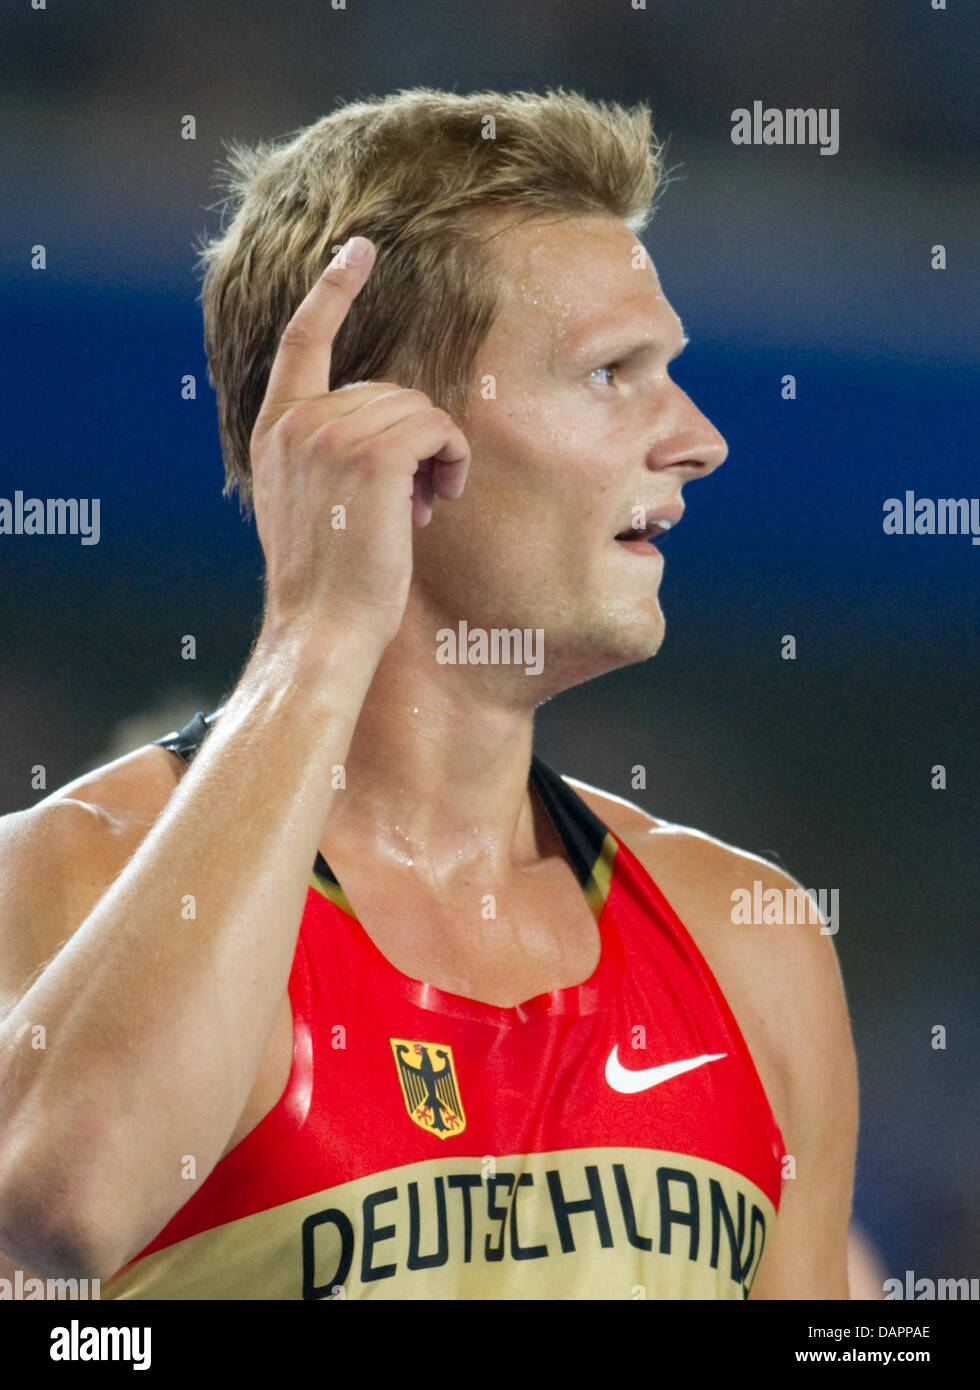 Pascal Behrenbruch Deutschland reagiert nach 1500 m der Männer von der Decathlon-Wettbewerb bei der 13. IAAF Weltmeisterschaften in Daegu, Südkorea, 28. August 2011. Foto: Bernd Thissen Dpa +++(c) Dpa - Bildfunk +++ Stockfoto